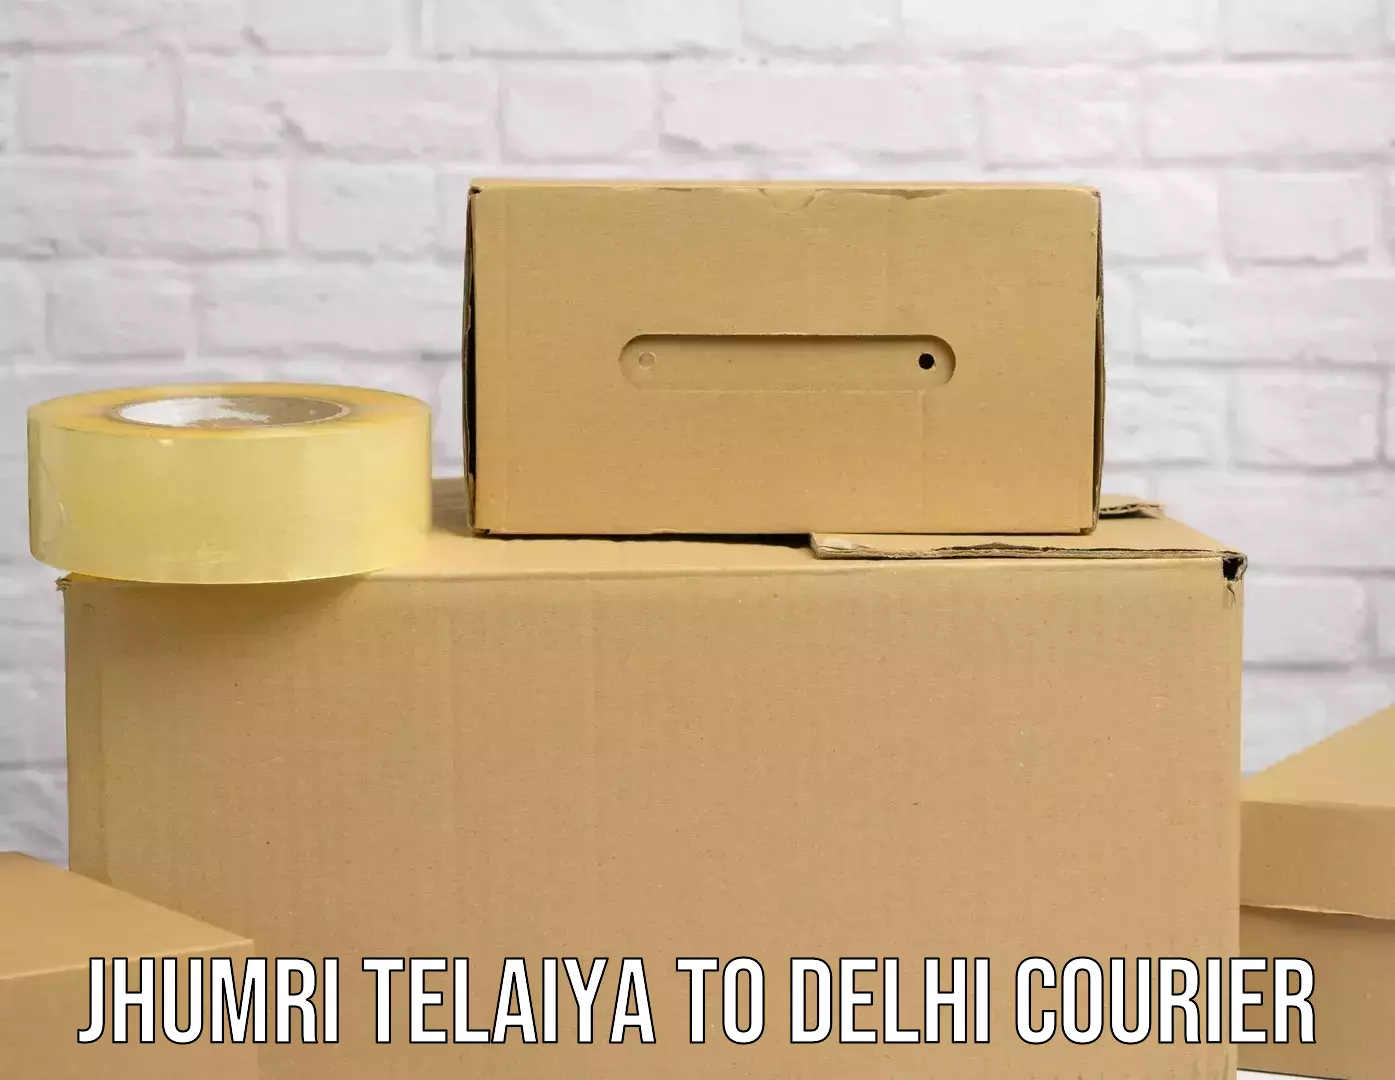 On-demand delivery Jhumri Telaiya to University of Delhi